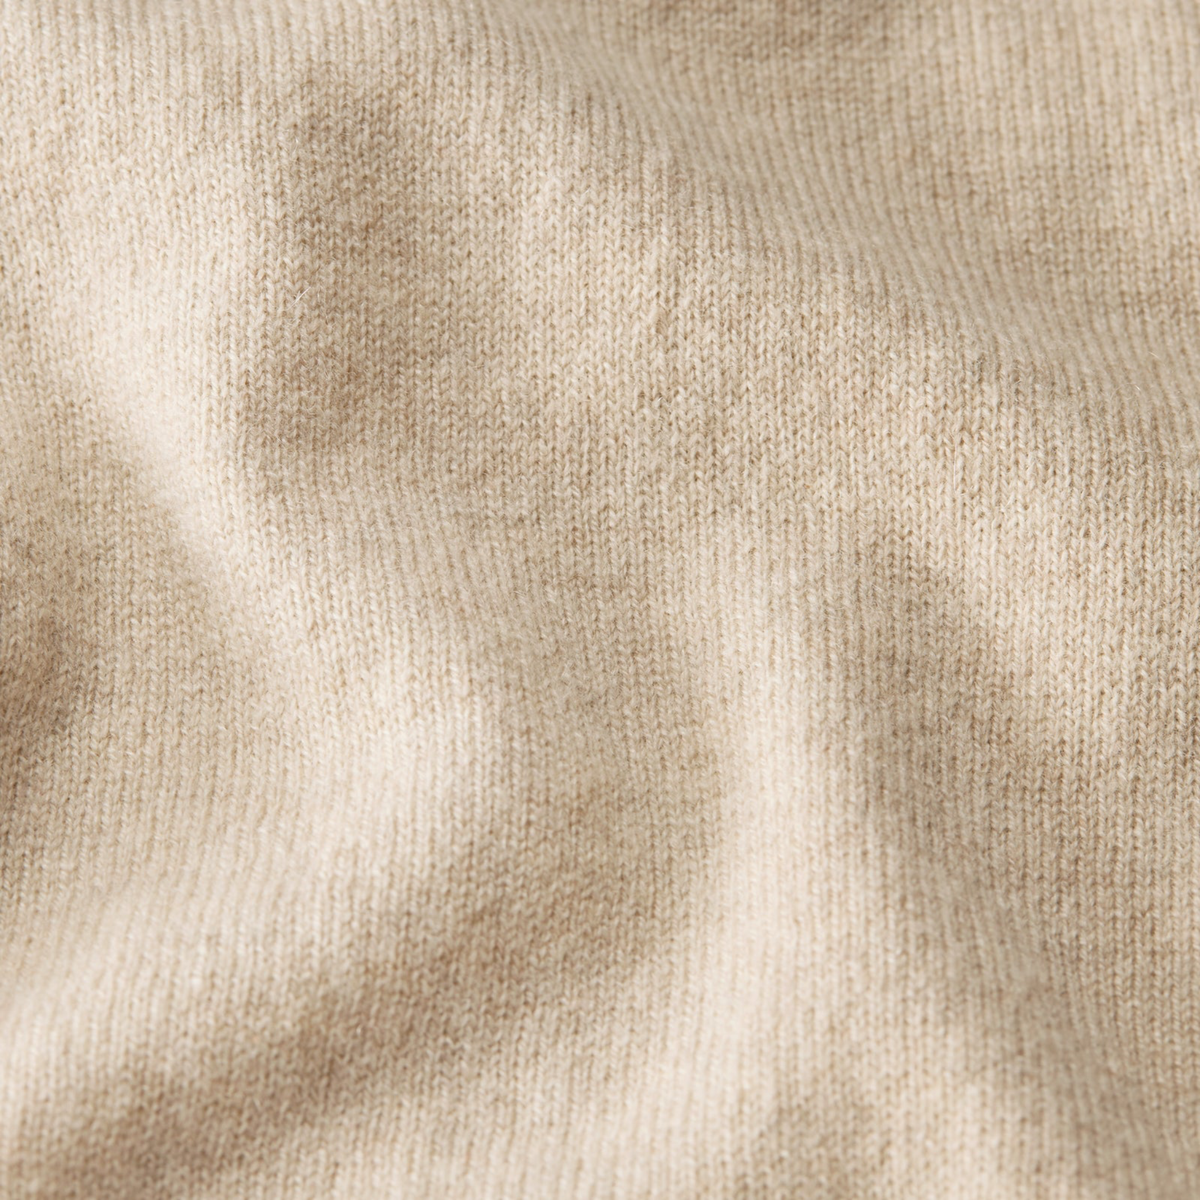 Fabric Closeup of Tan Sferra Intimita Short Sleeve Top